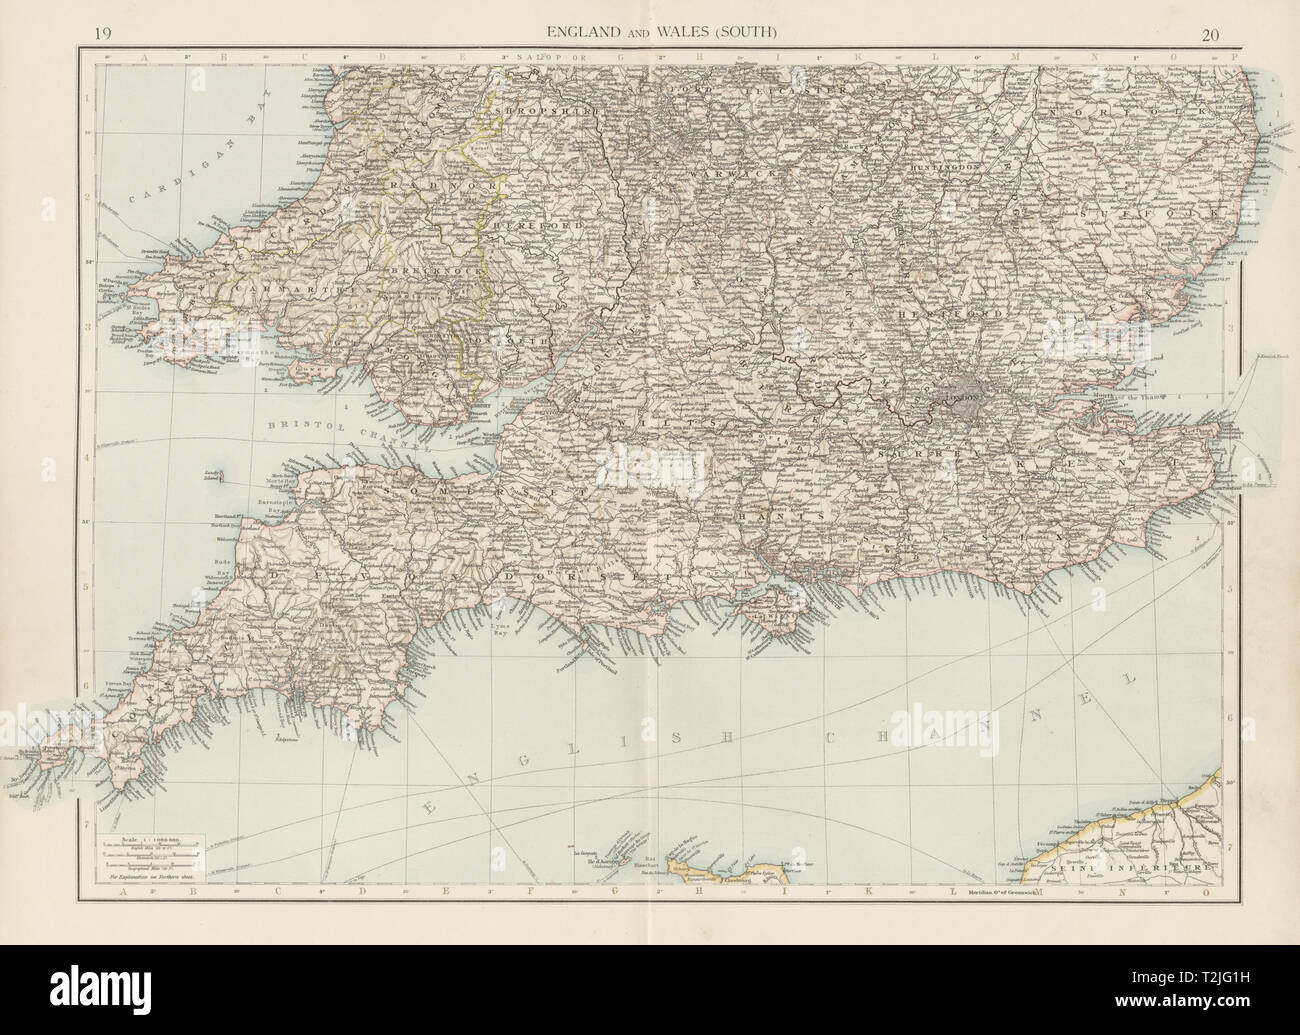 Angleterre et Pays de Galles (sud). La fois 1900 ancienne carte graphique plan vintage Banque D'Images